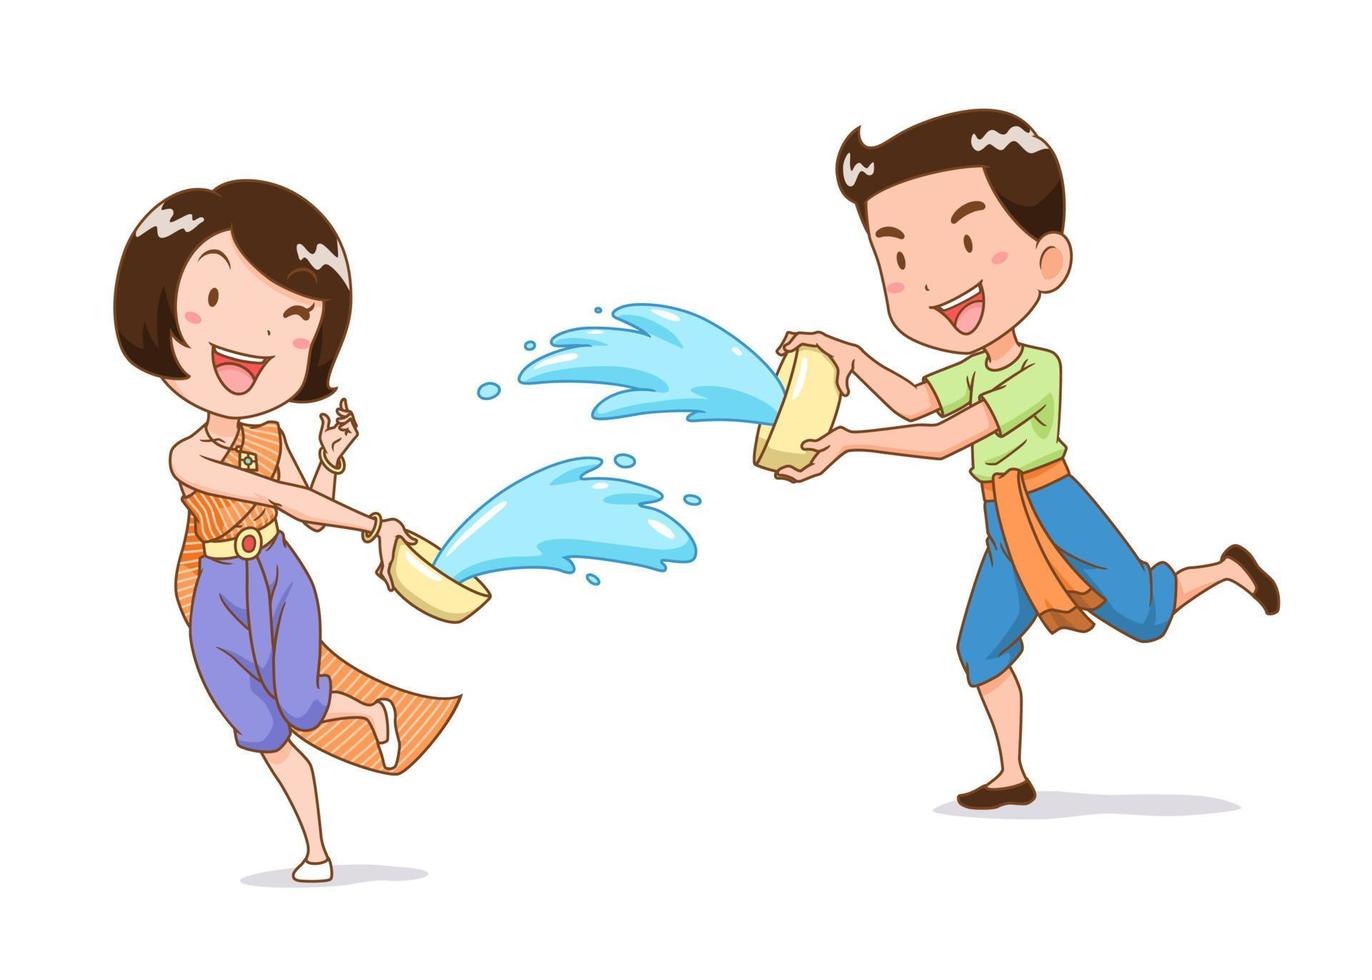 personnage de dessin animé d'un garçon et d'une fille éclaboussant de l'eau avec un bol d'eau au festival de songkran, en thaïlande. vecteur